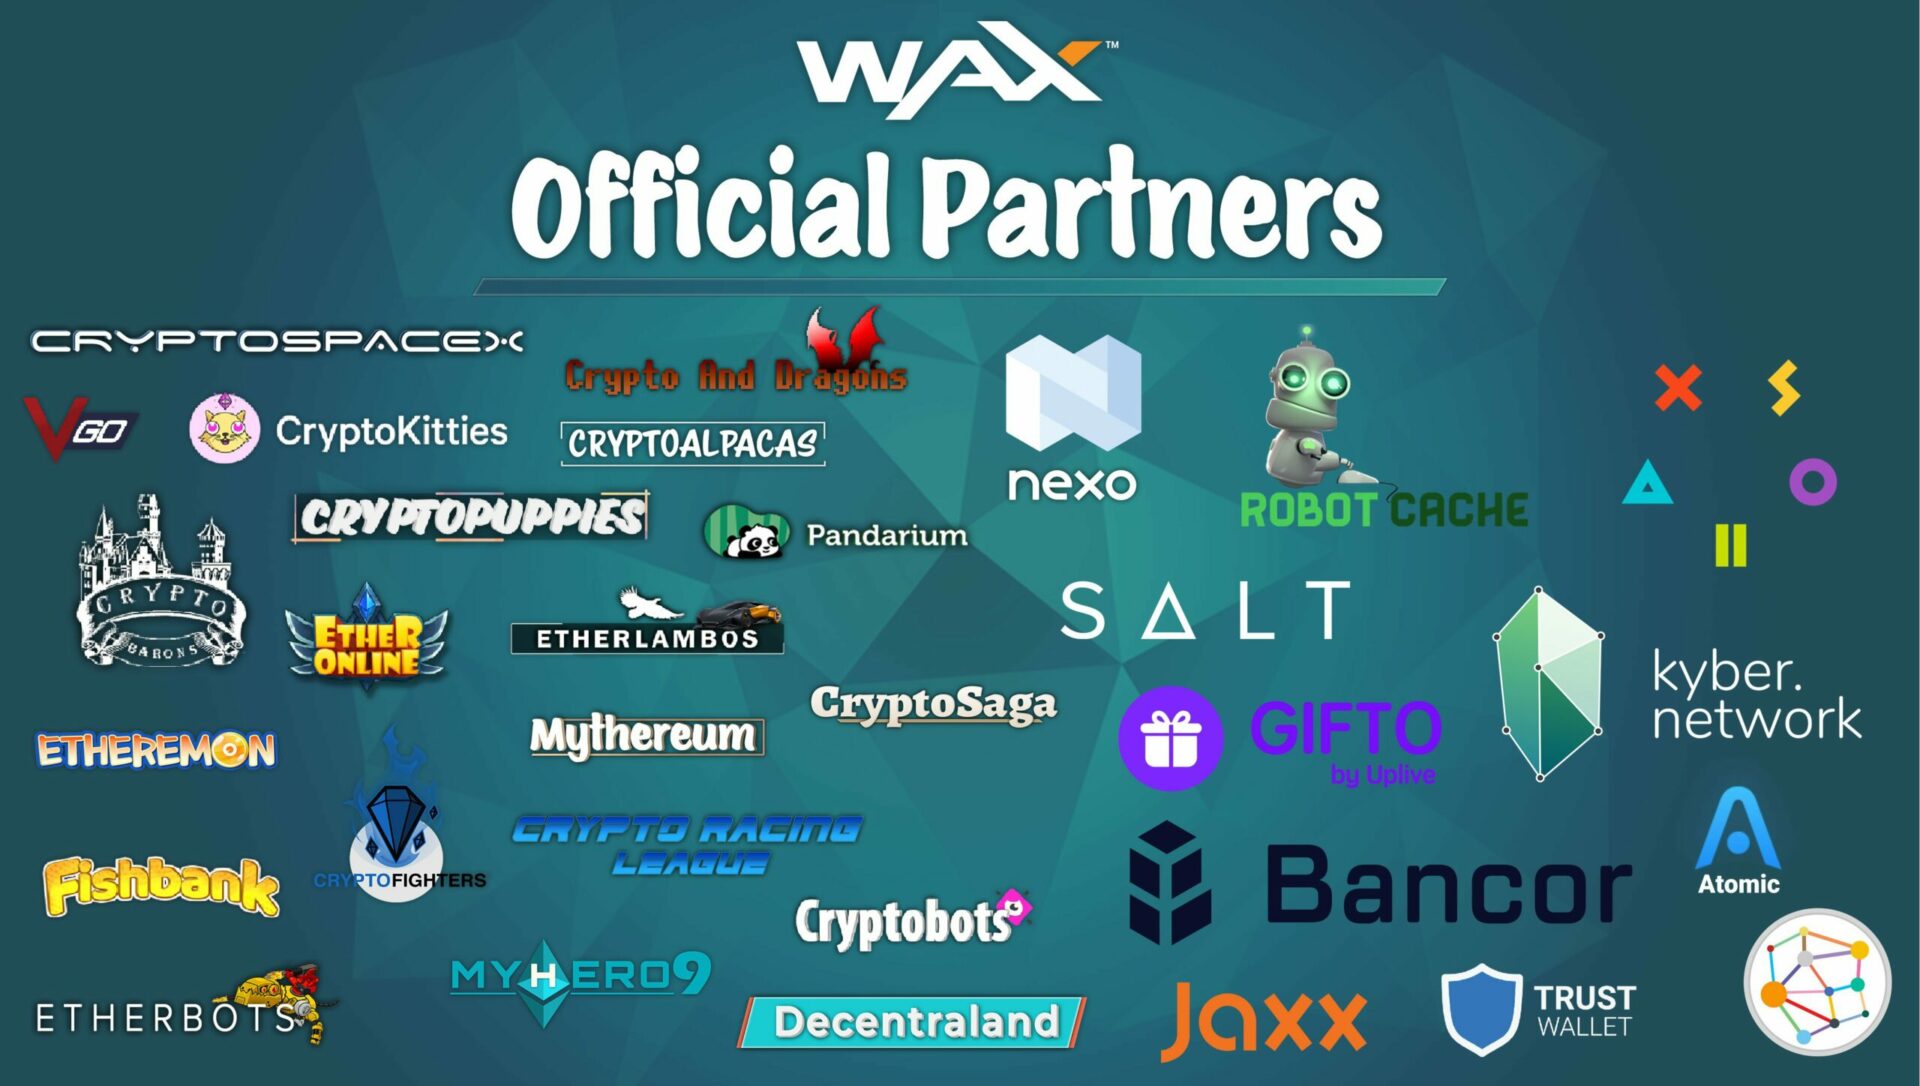 WAX WAXP Partners